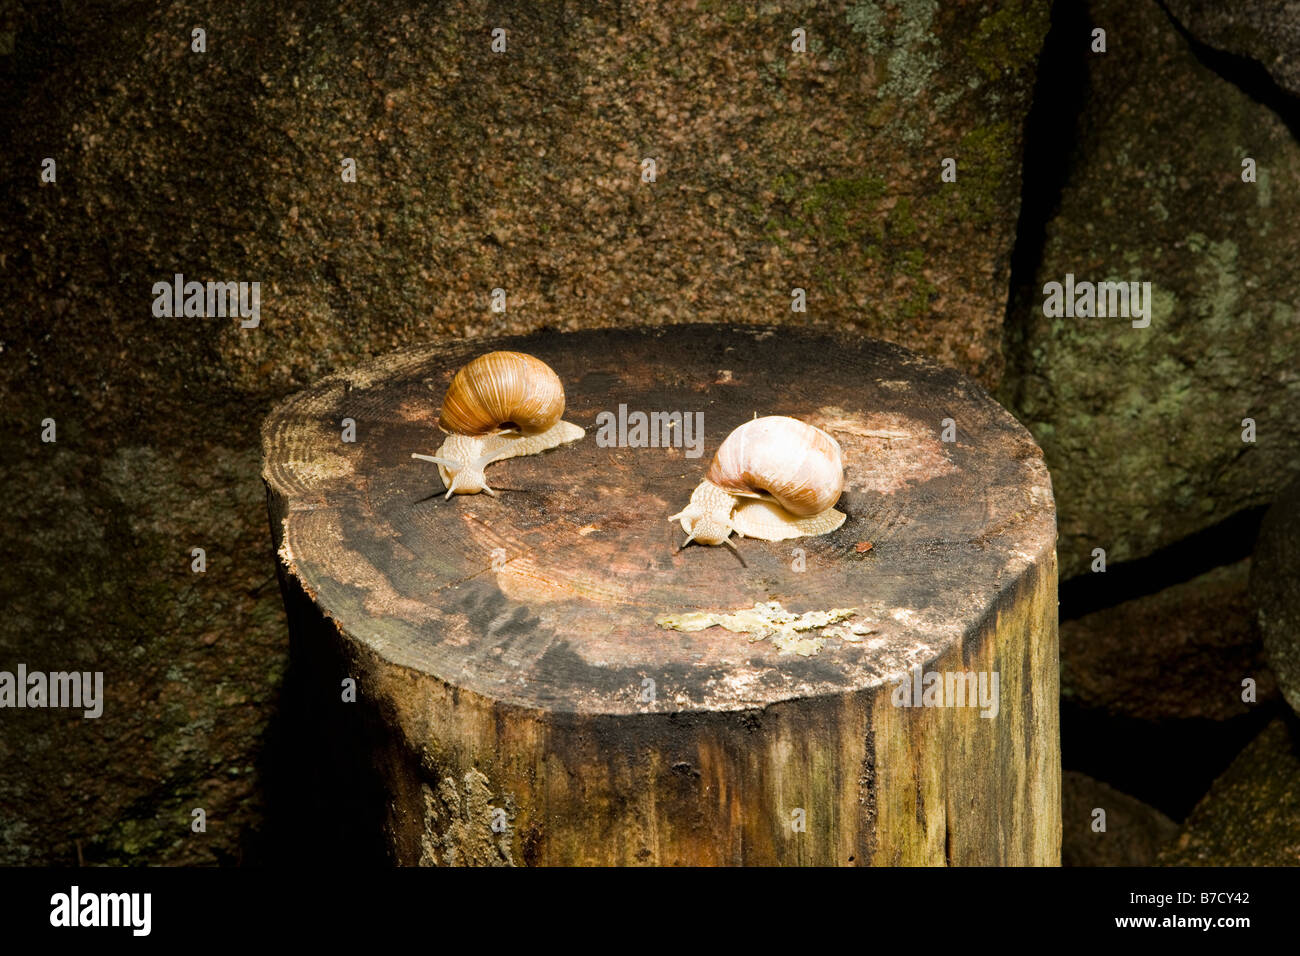 Deux escargots terrestres (Gastropoda) sur une souche d'arbre Banque D'Images